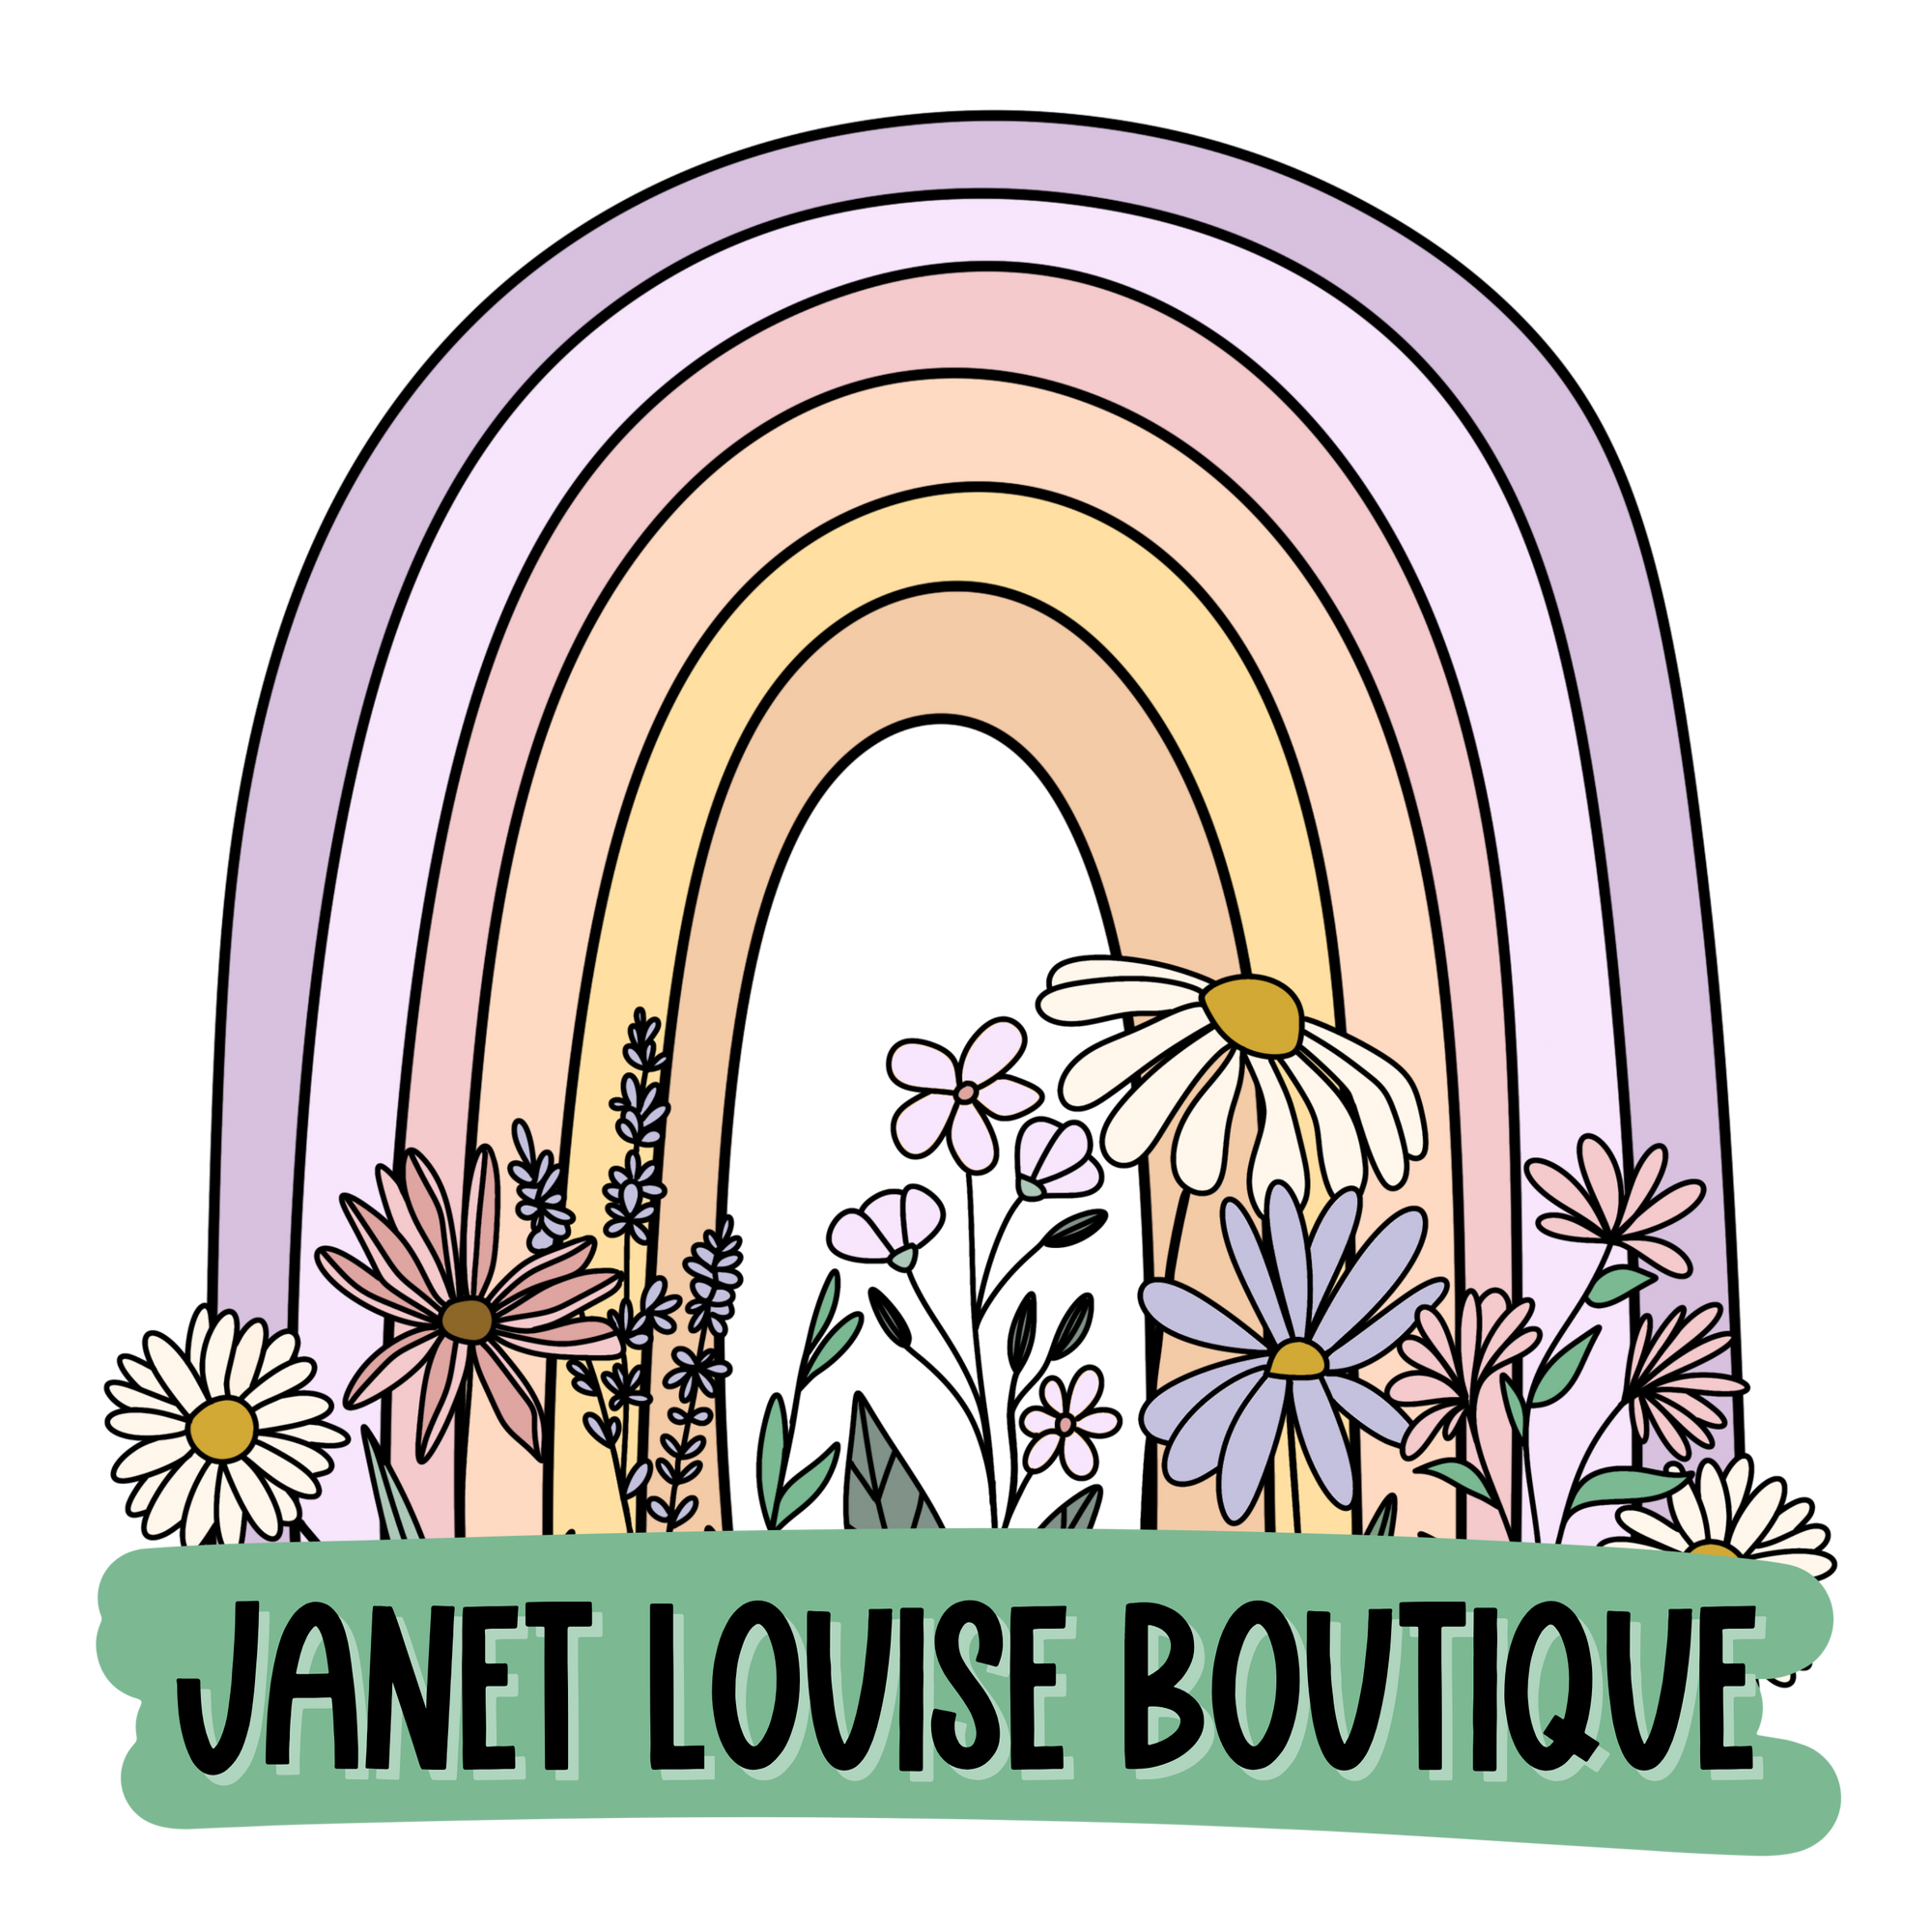 Janet Louise Boutique